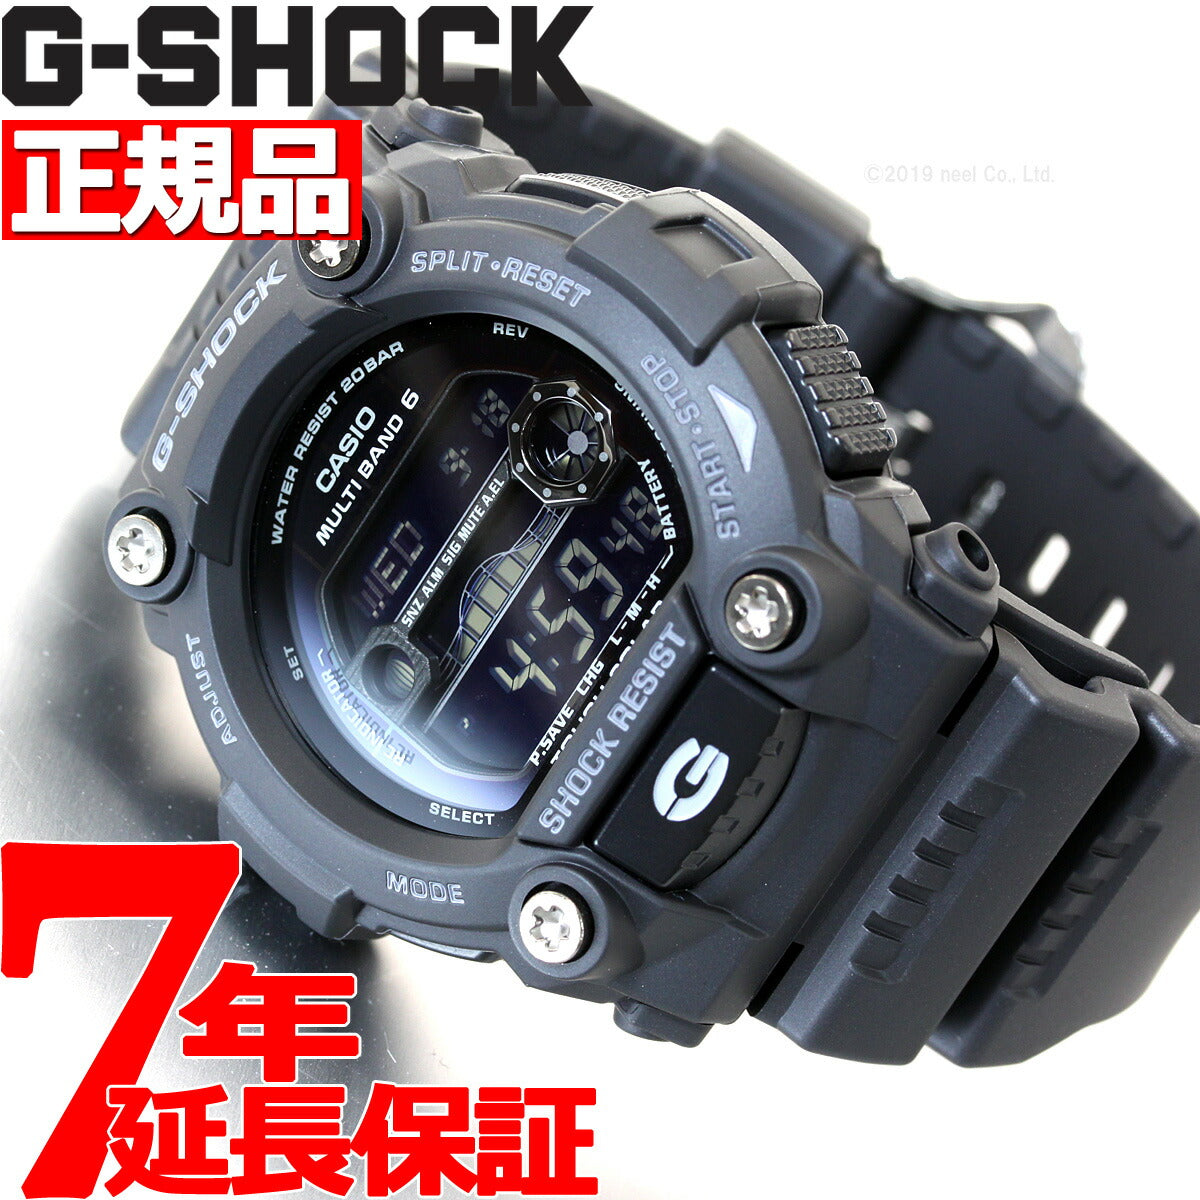 カシオ Gショック G-SHOCK 電波時計 ソーラー メンズ GW-7900B-1JF【正規品】【送料無料】